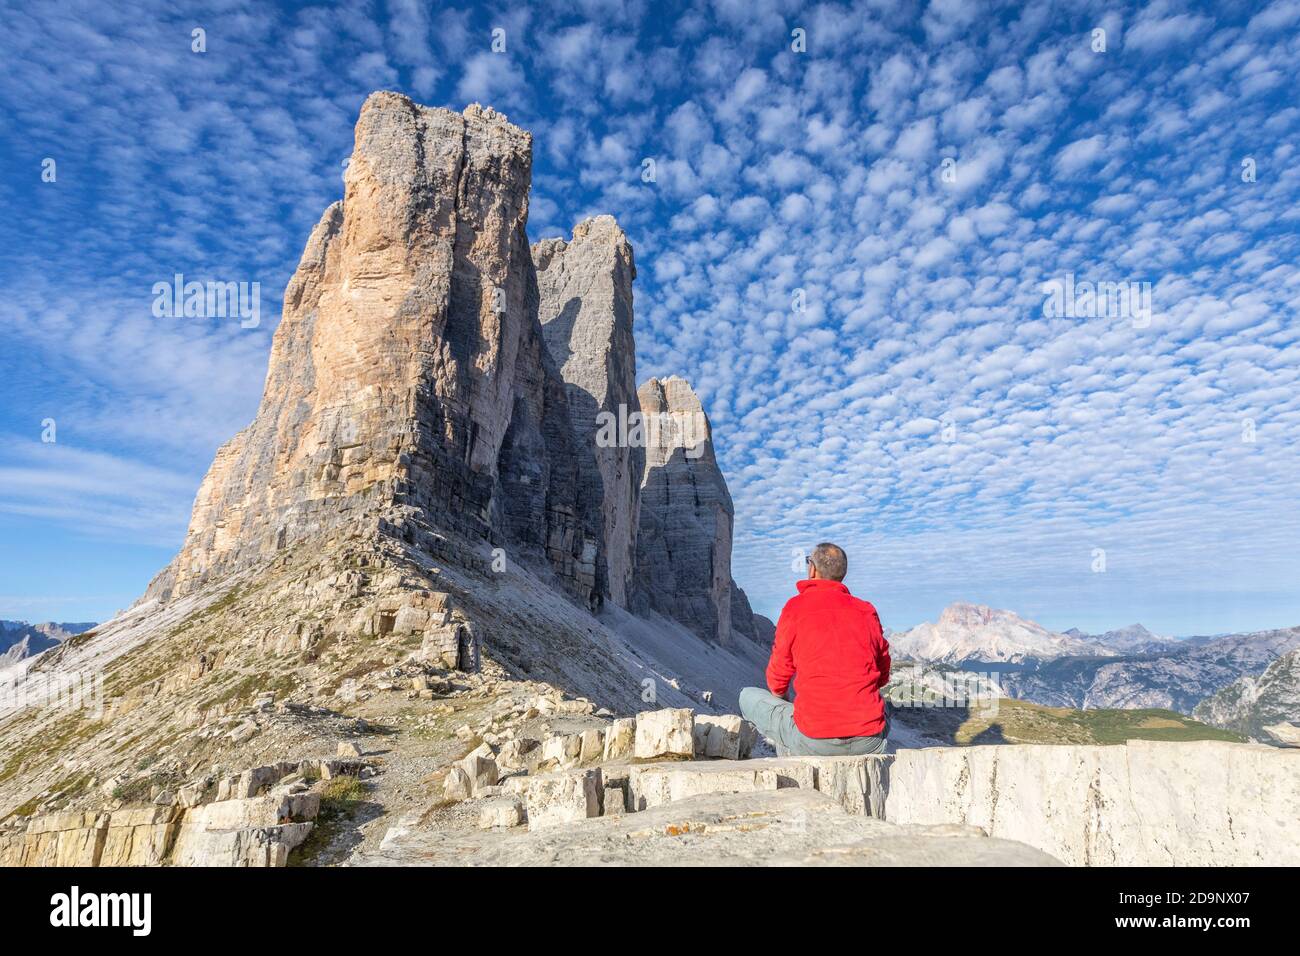 Einsamer Mann, von 45 bis 50 Jahre alt, sitzt an der lavaredo Gabel, am Fuße der Tre Cime di Lavaredo, Dolomiten Berge, Auronzo di Cadore, Provinz Belluno, Venetien, Italien, Europa Stockfoto